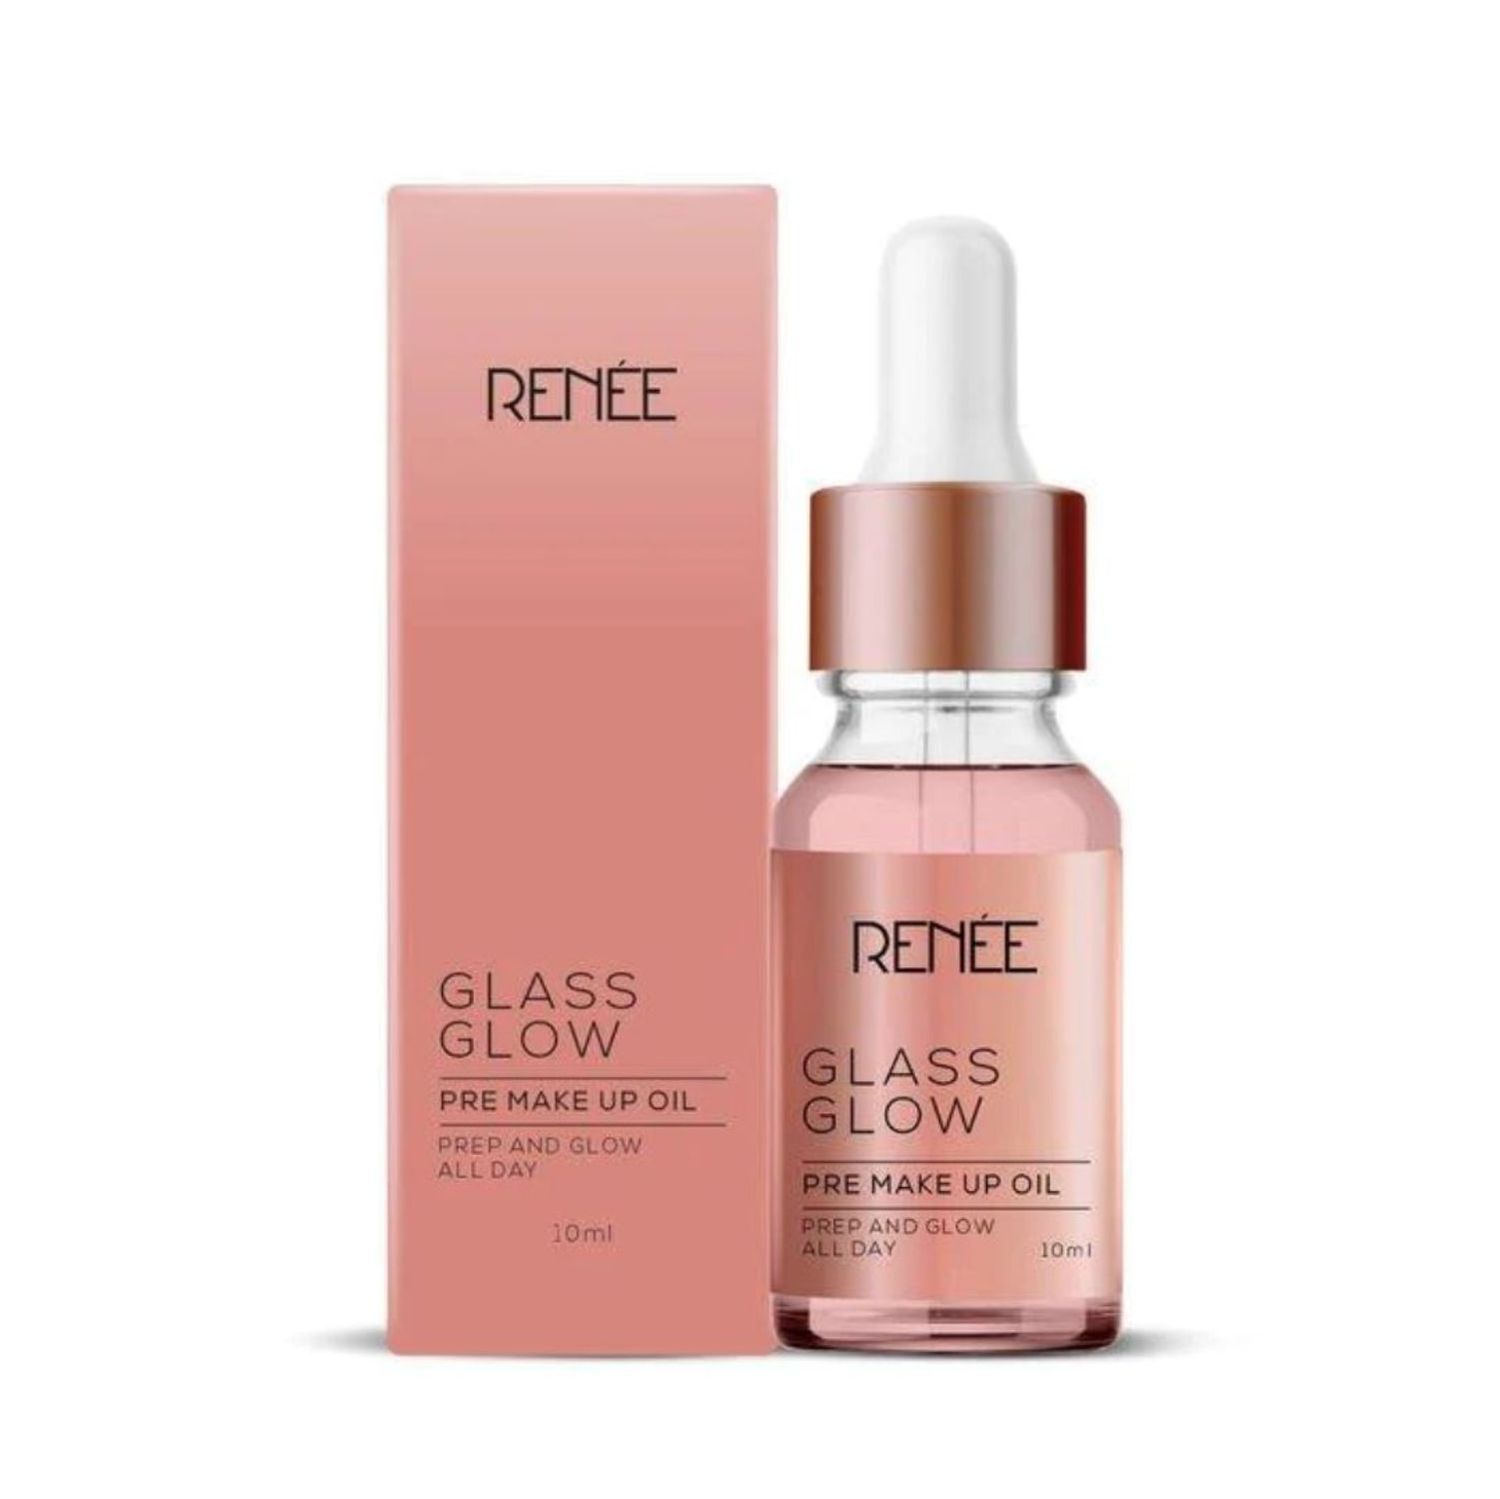 Buy RENEE Glass Glow Pre Make Up Oil, 10ml - Purplle